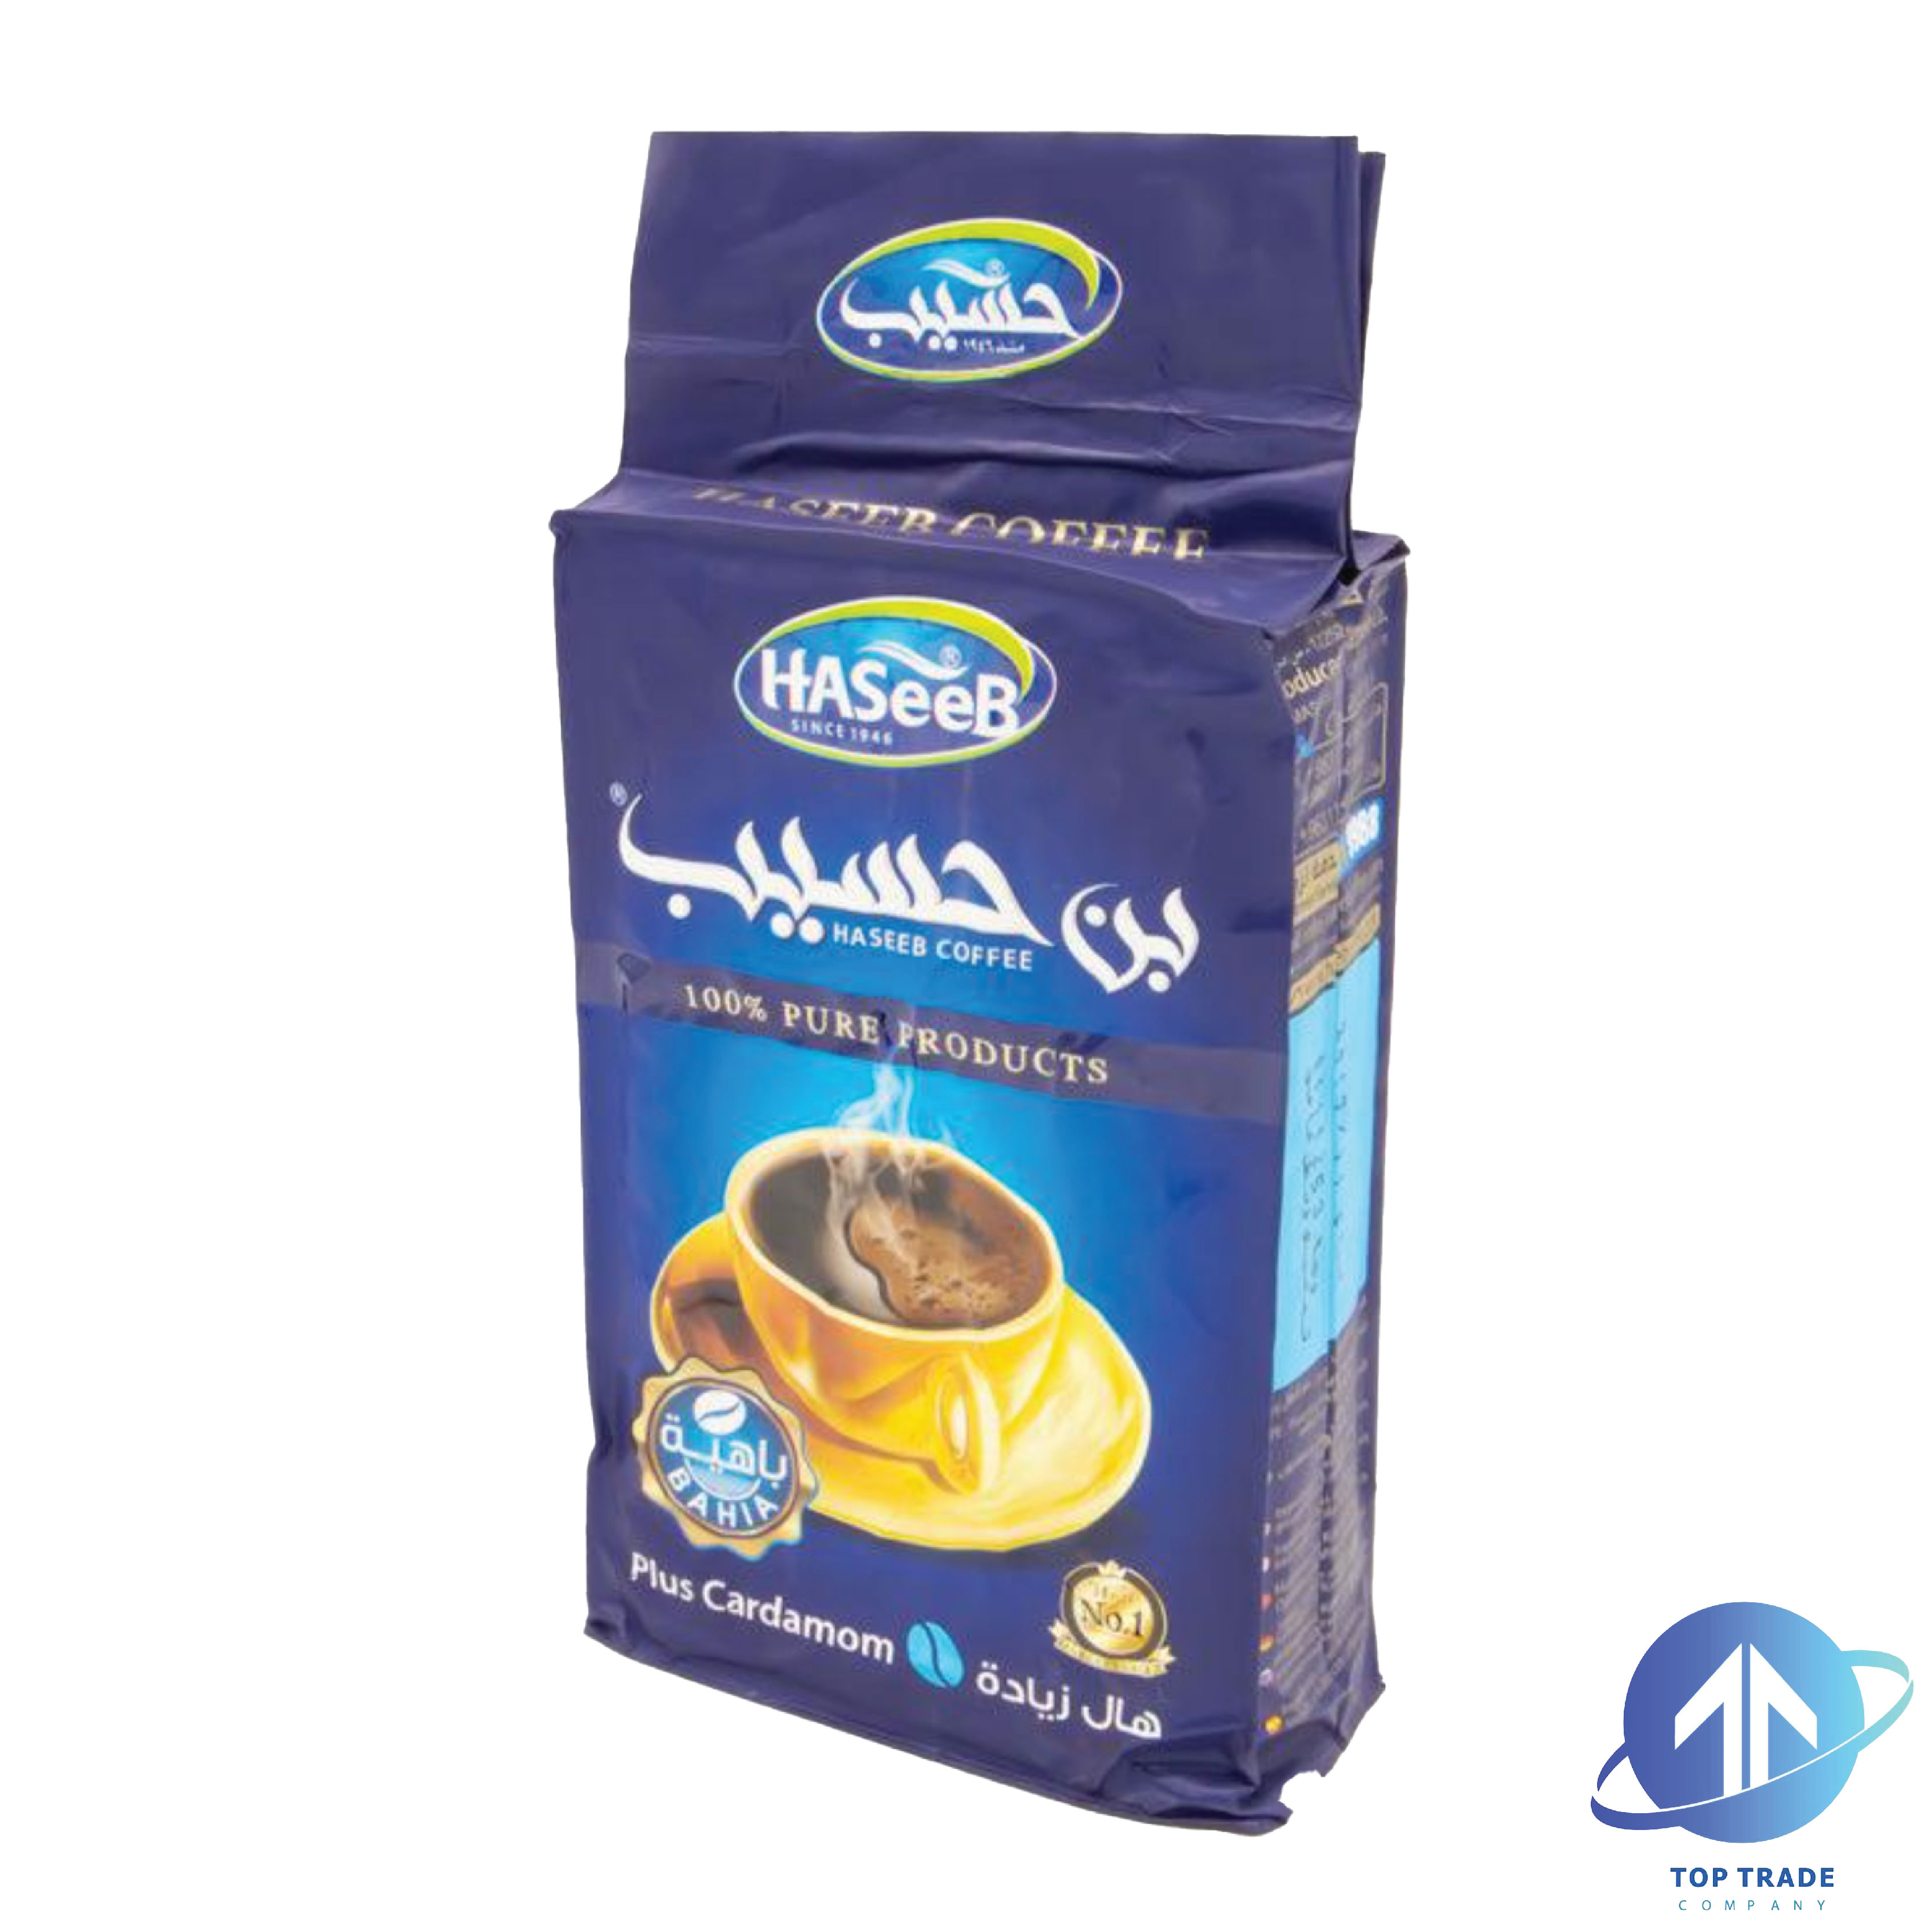 Haseeb coffee Plus Cardamom 500gr